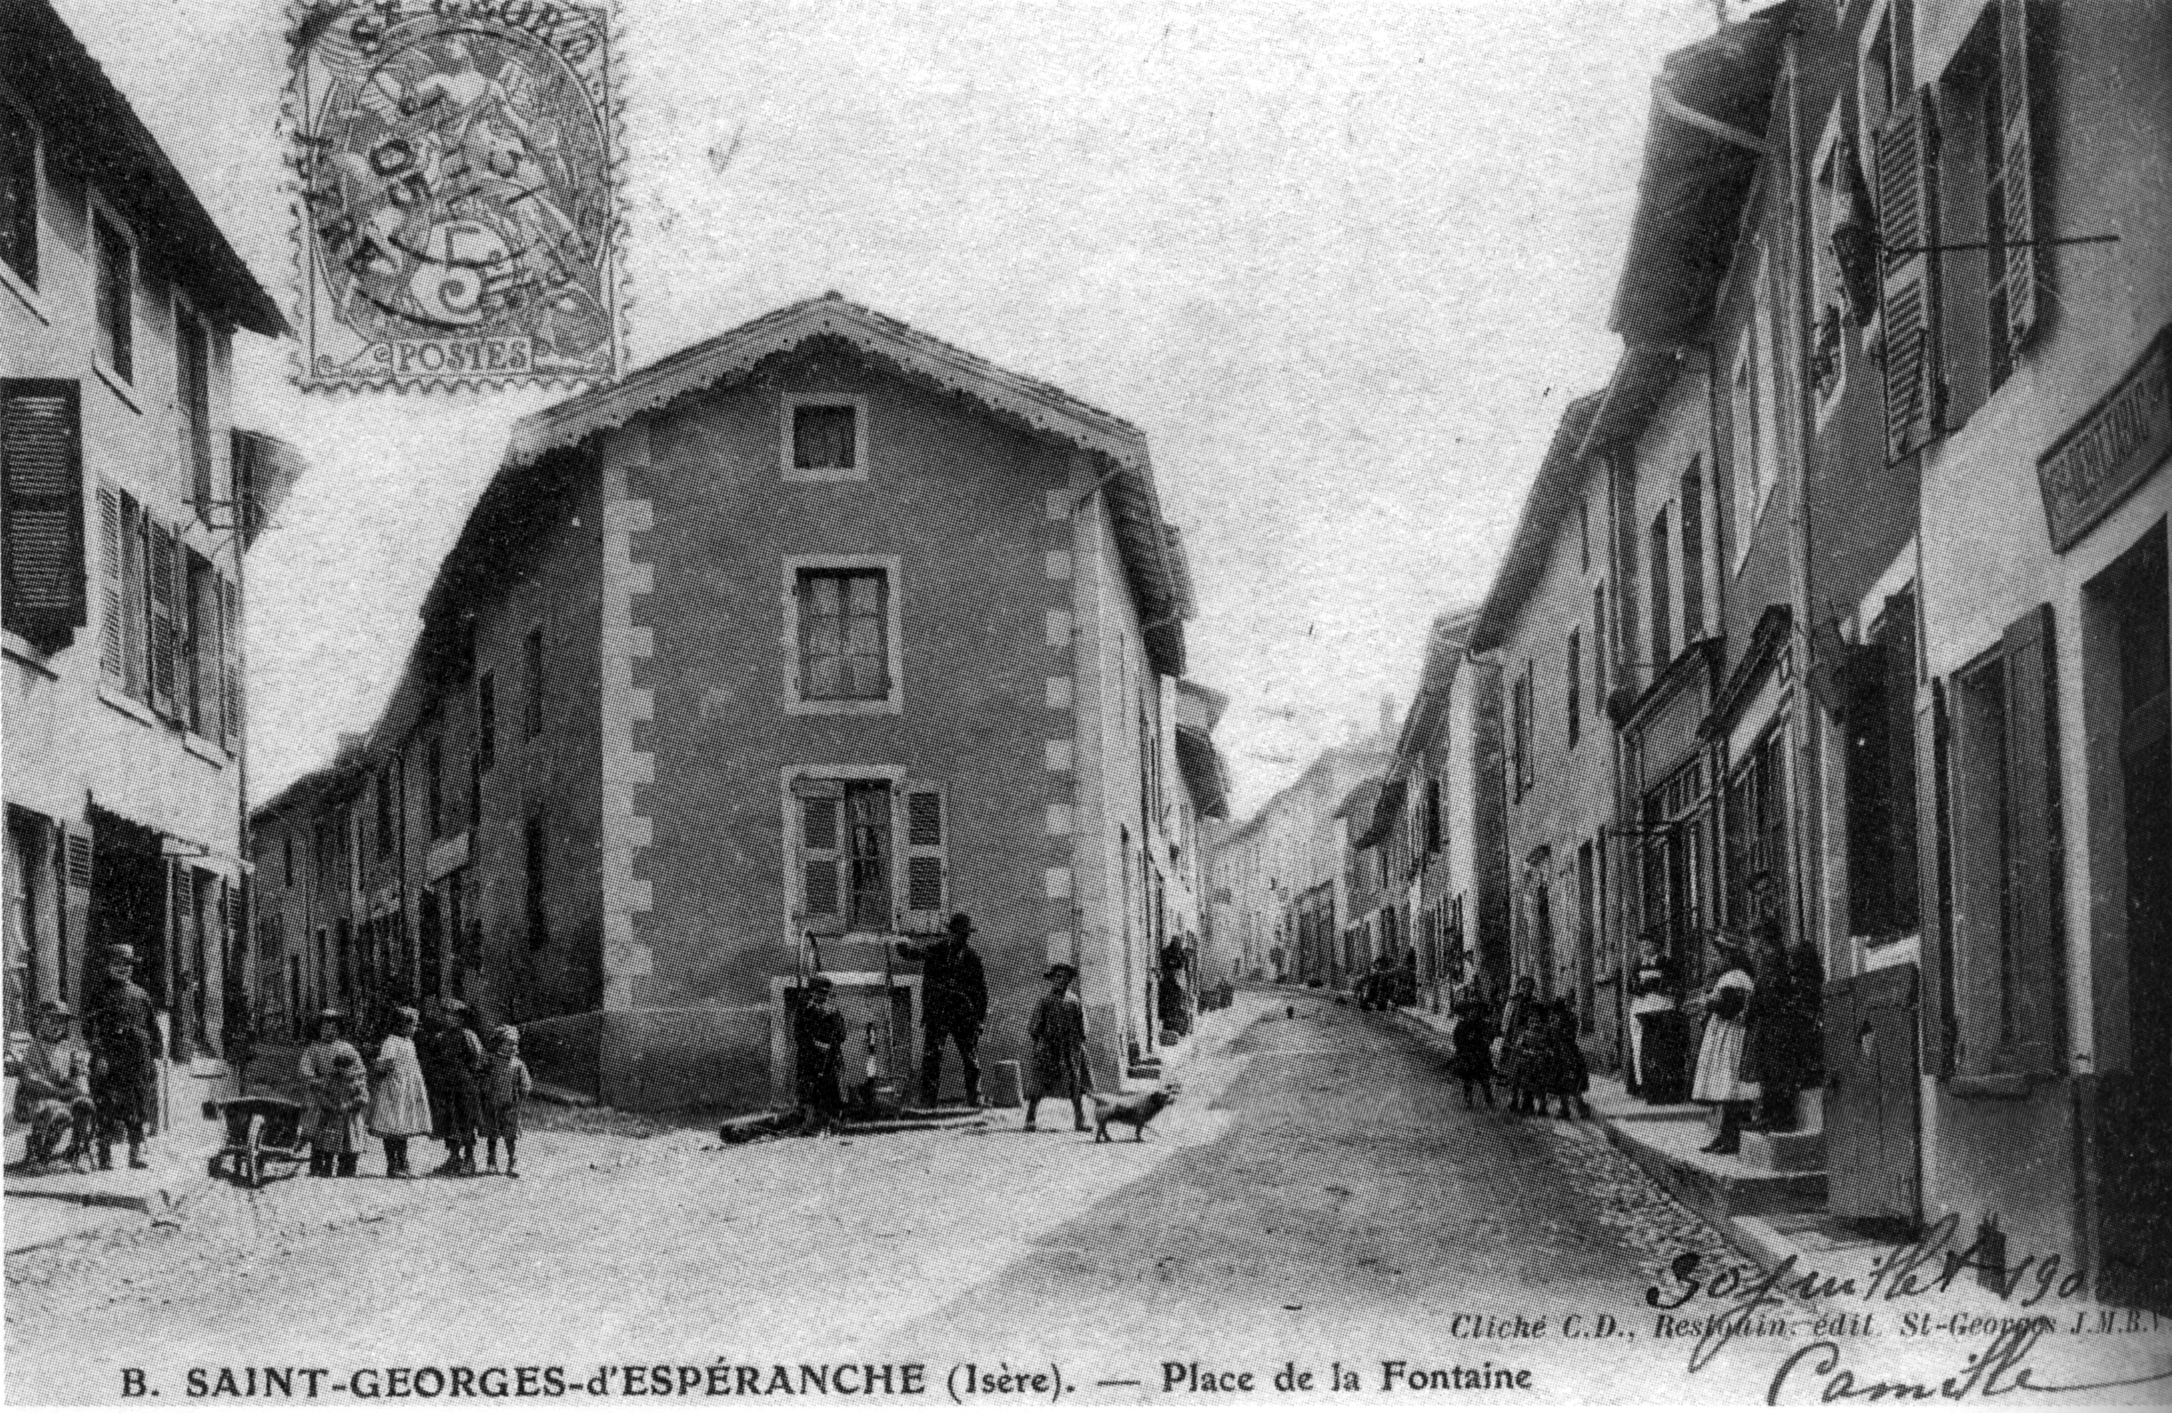 Saint-georges-d'espéranche